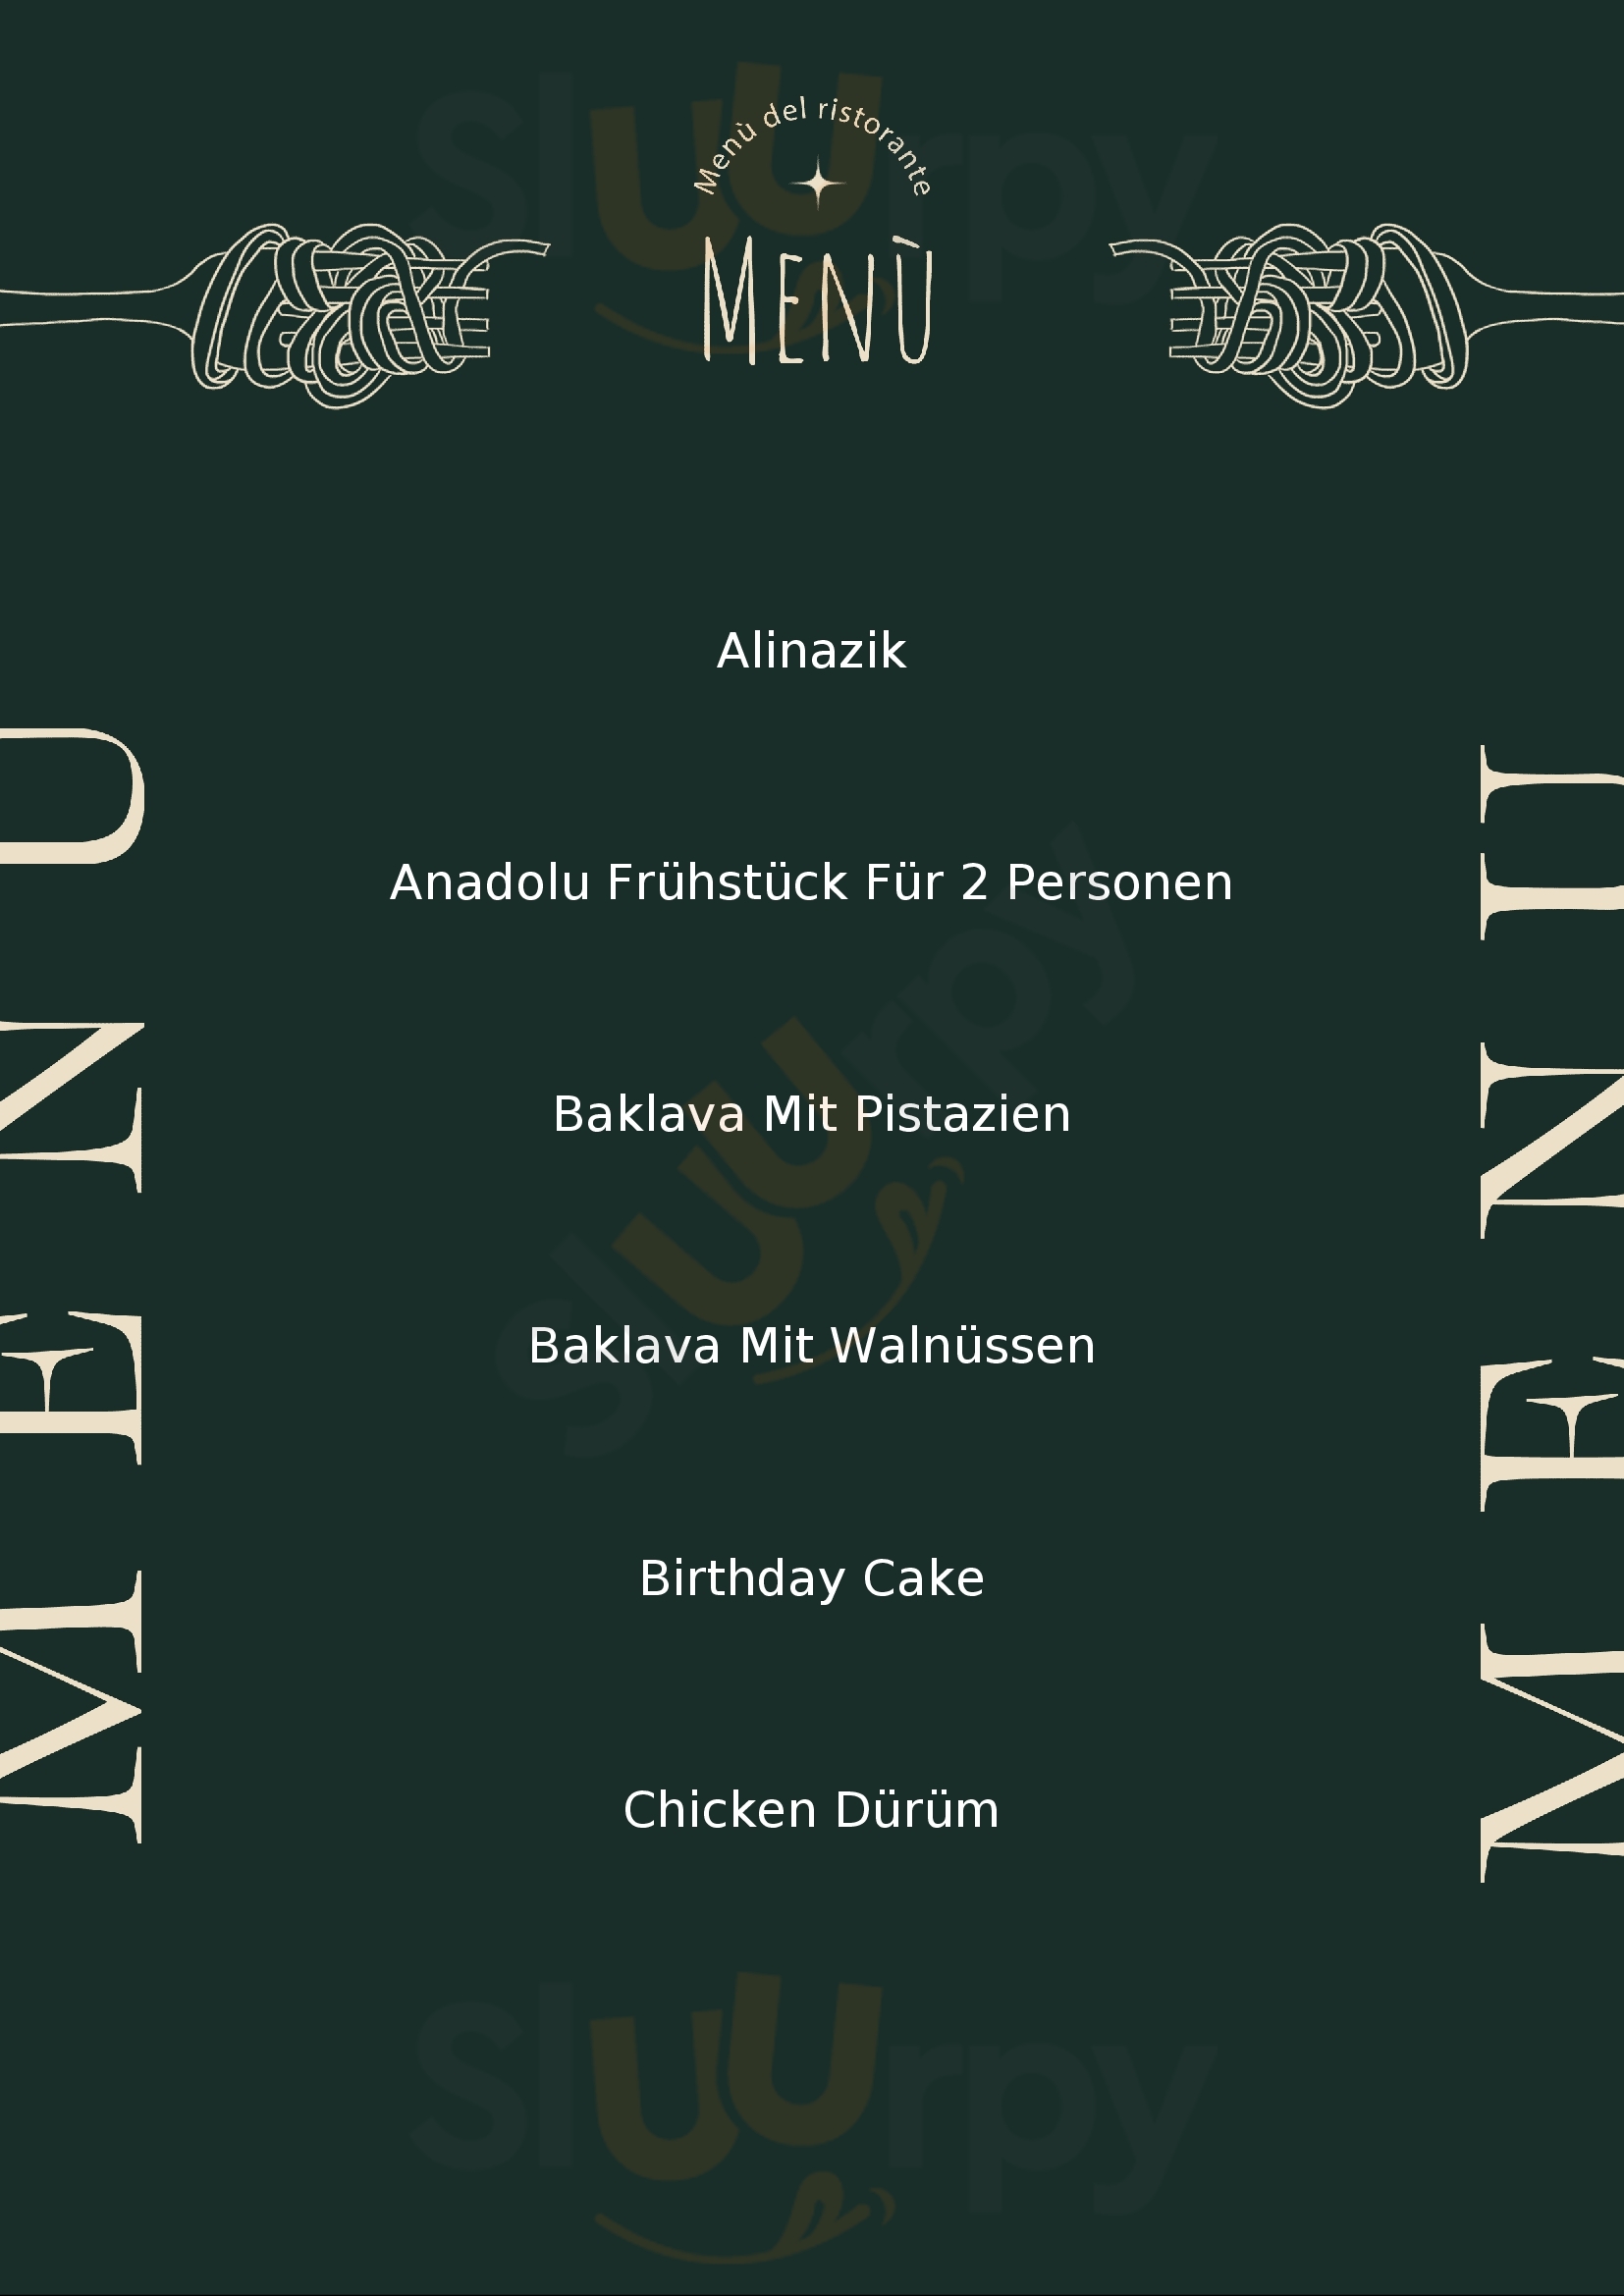 Sultan Turkish Cuisine München Menu - 1